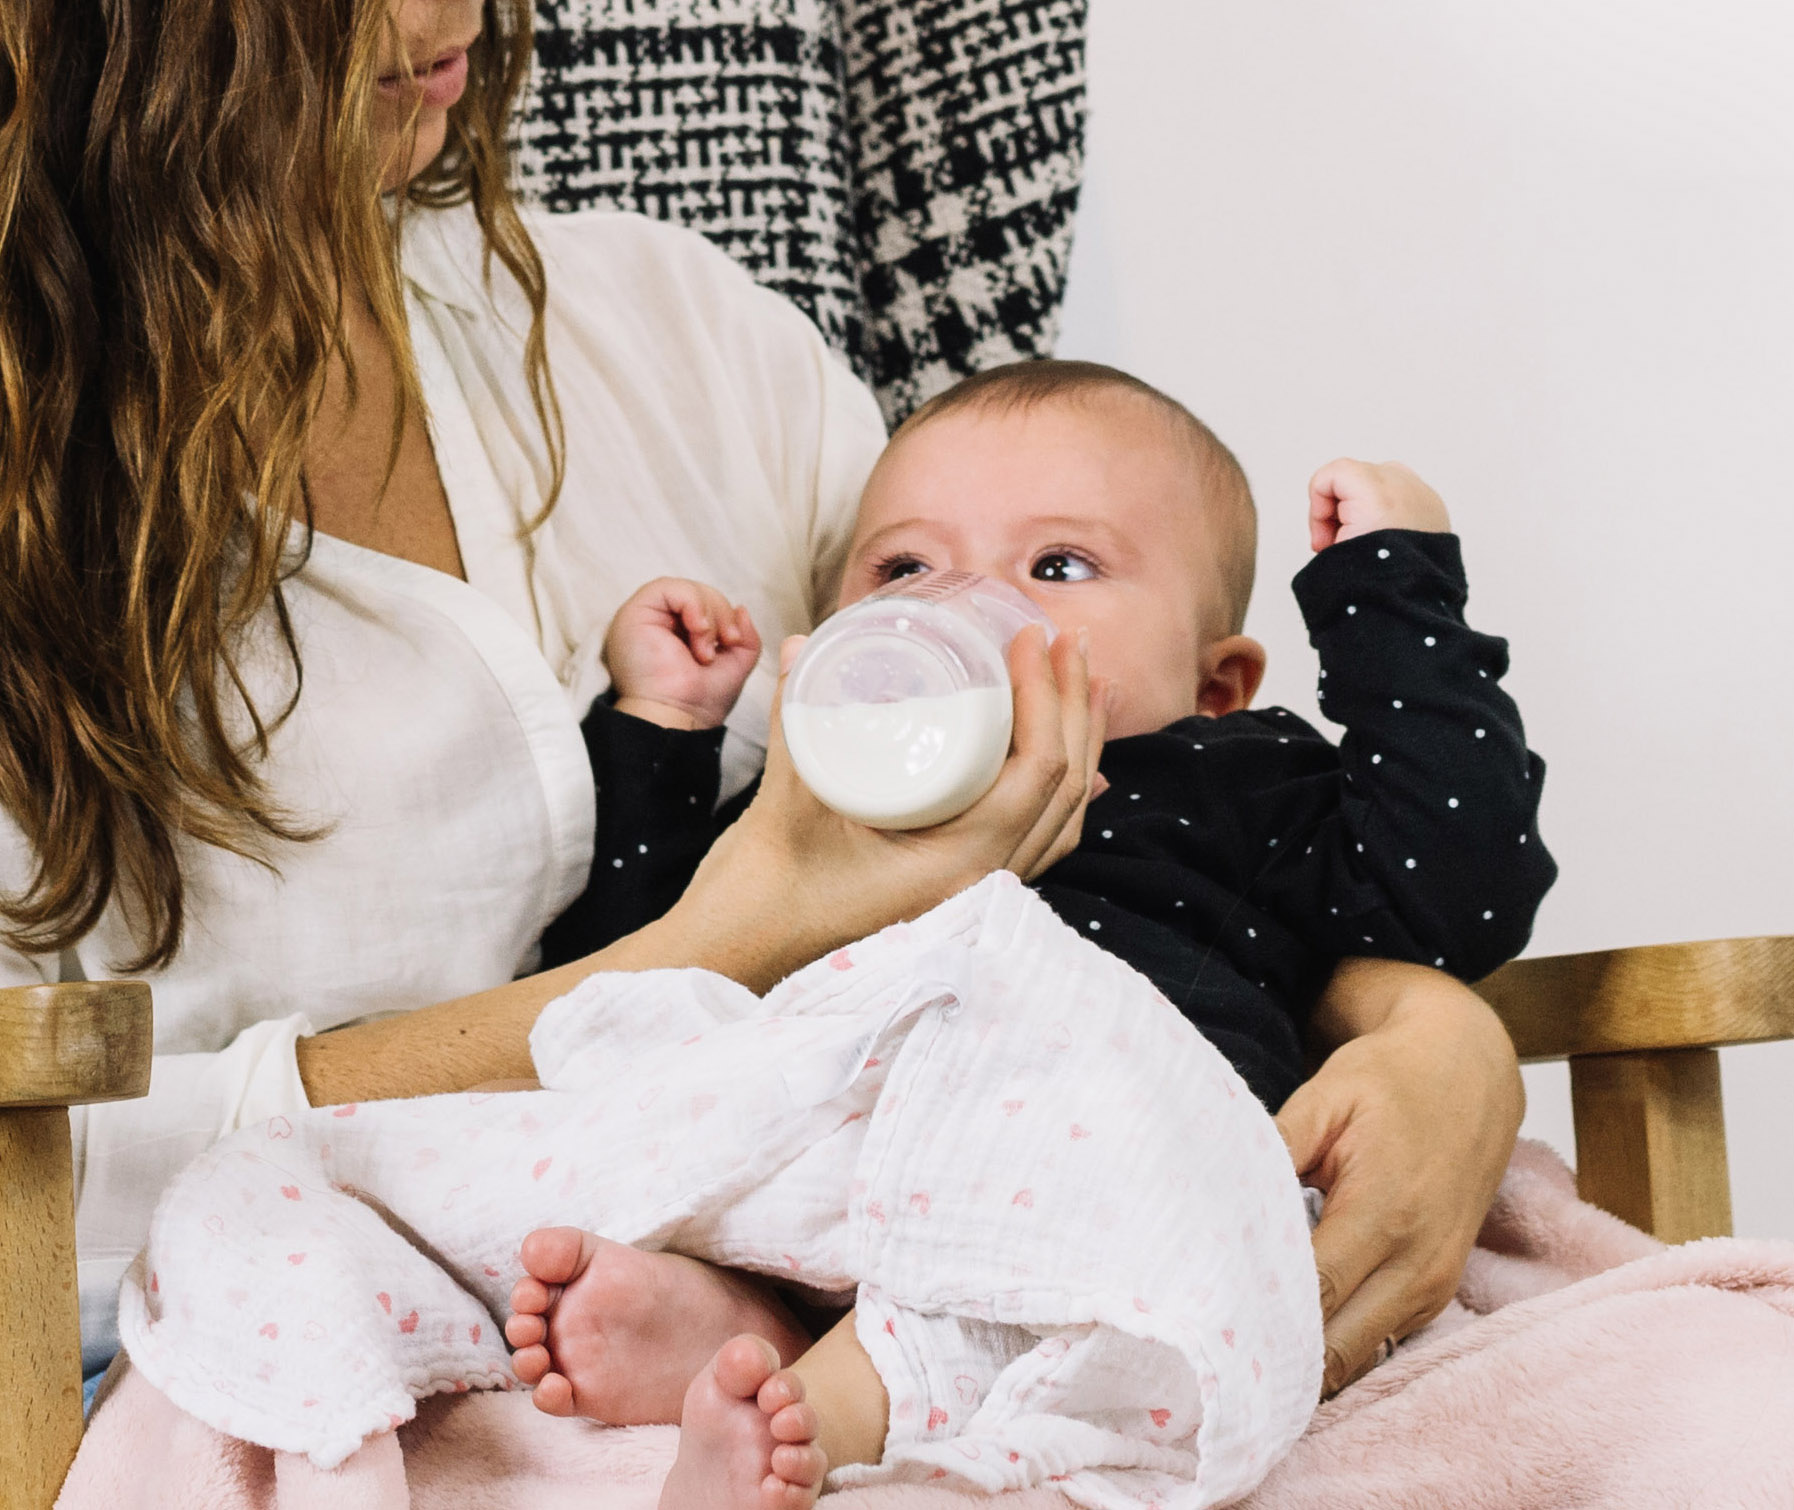 Guigoz Colinea lait 1er âge - Alimentation bébé 0-6 mois